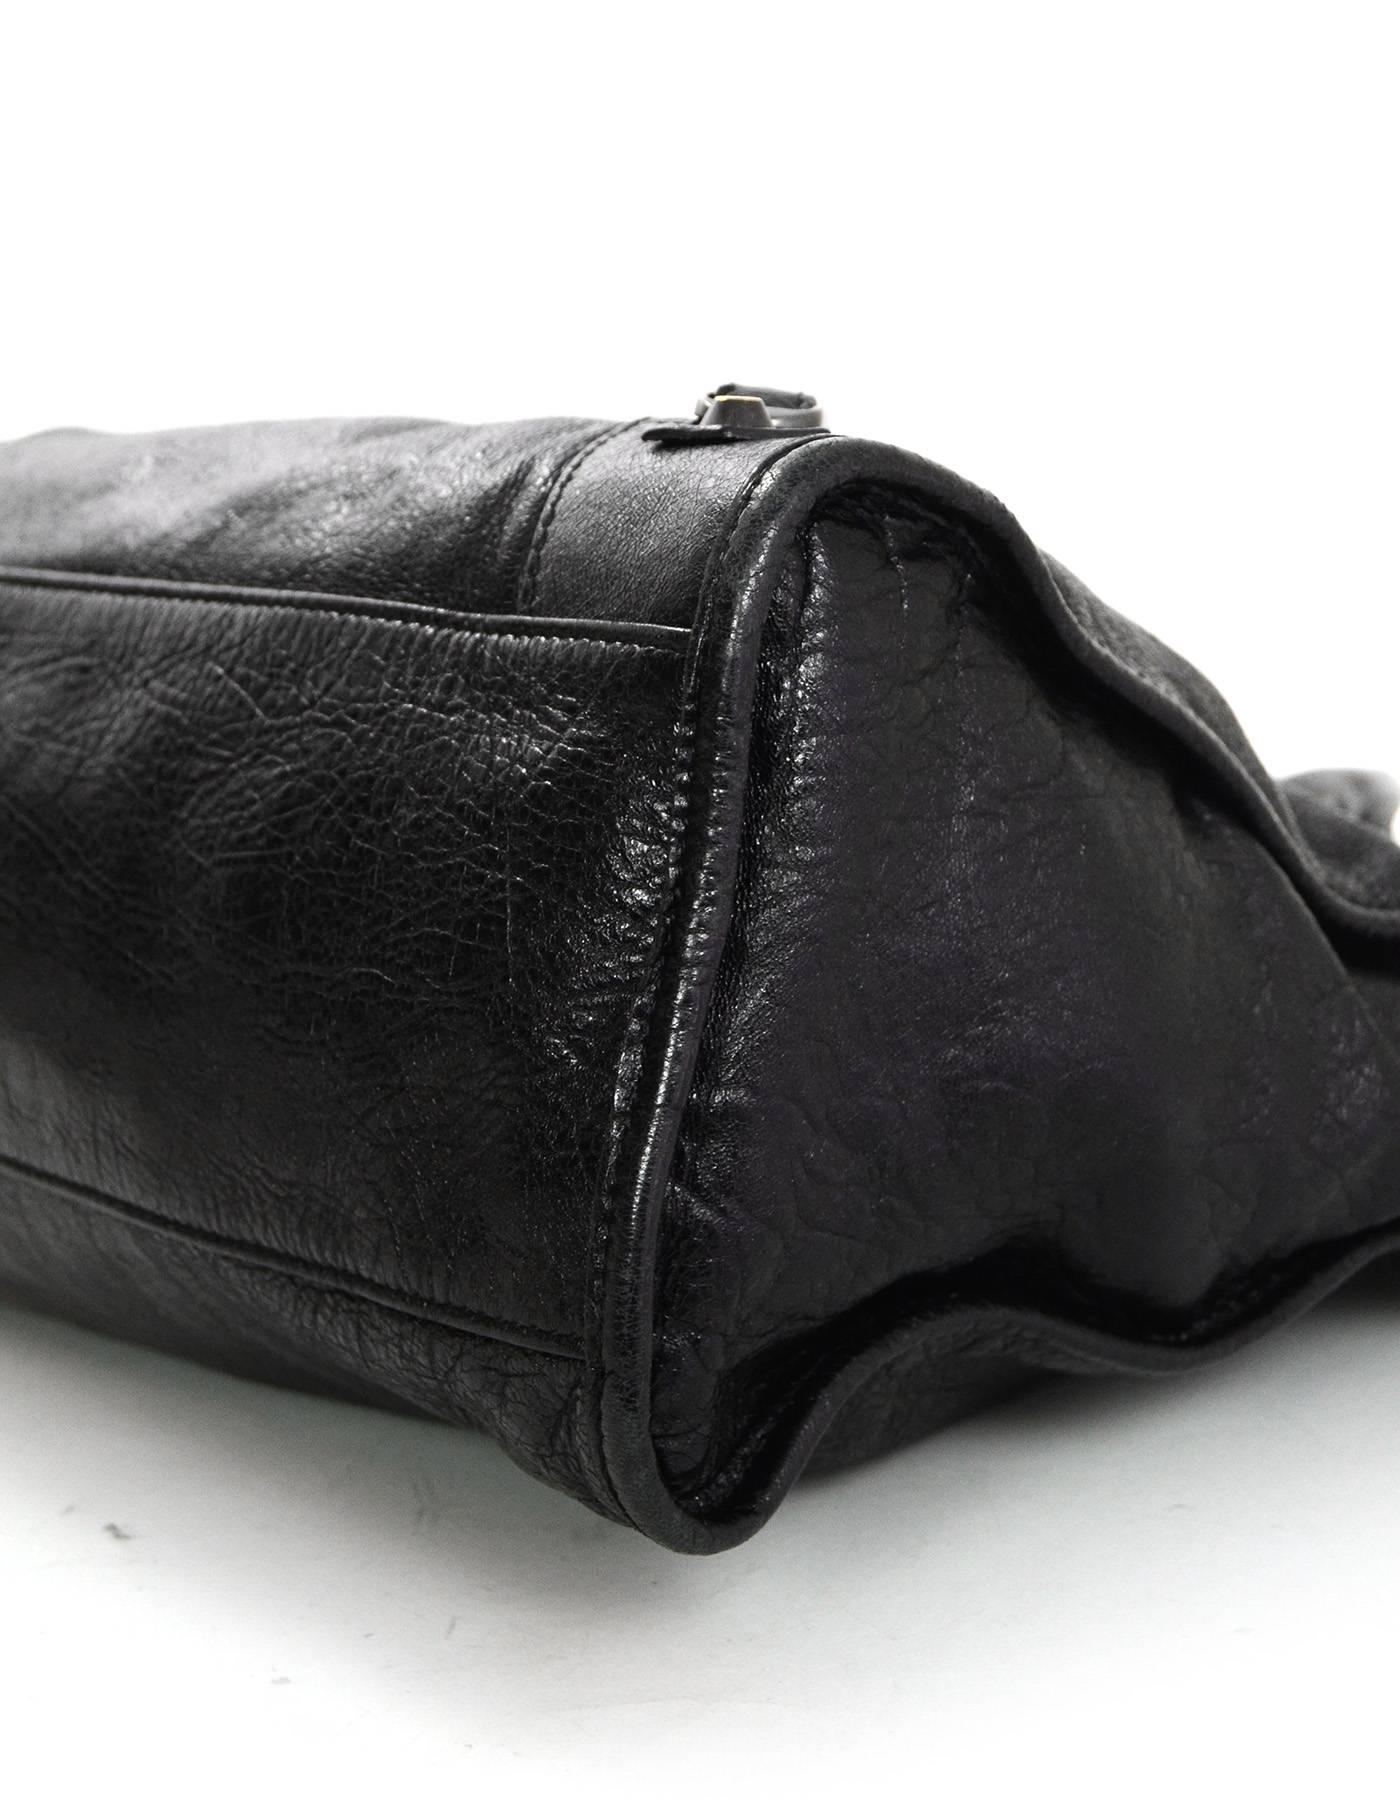 balenciaga black leather bag